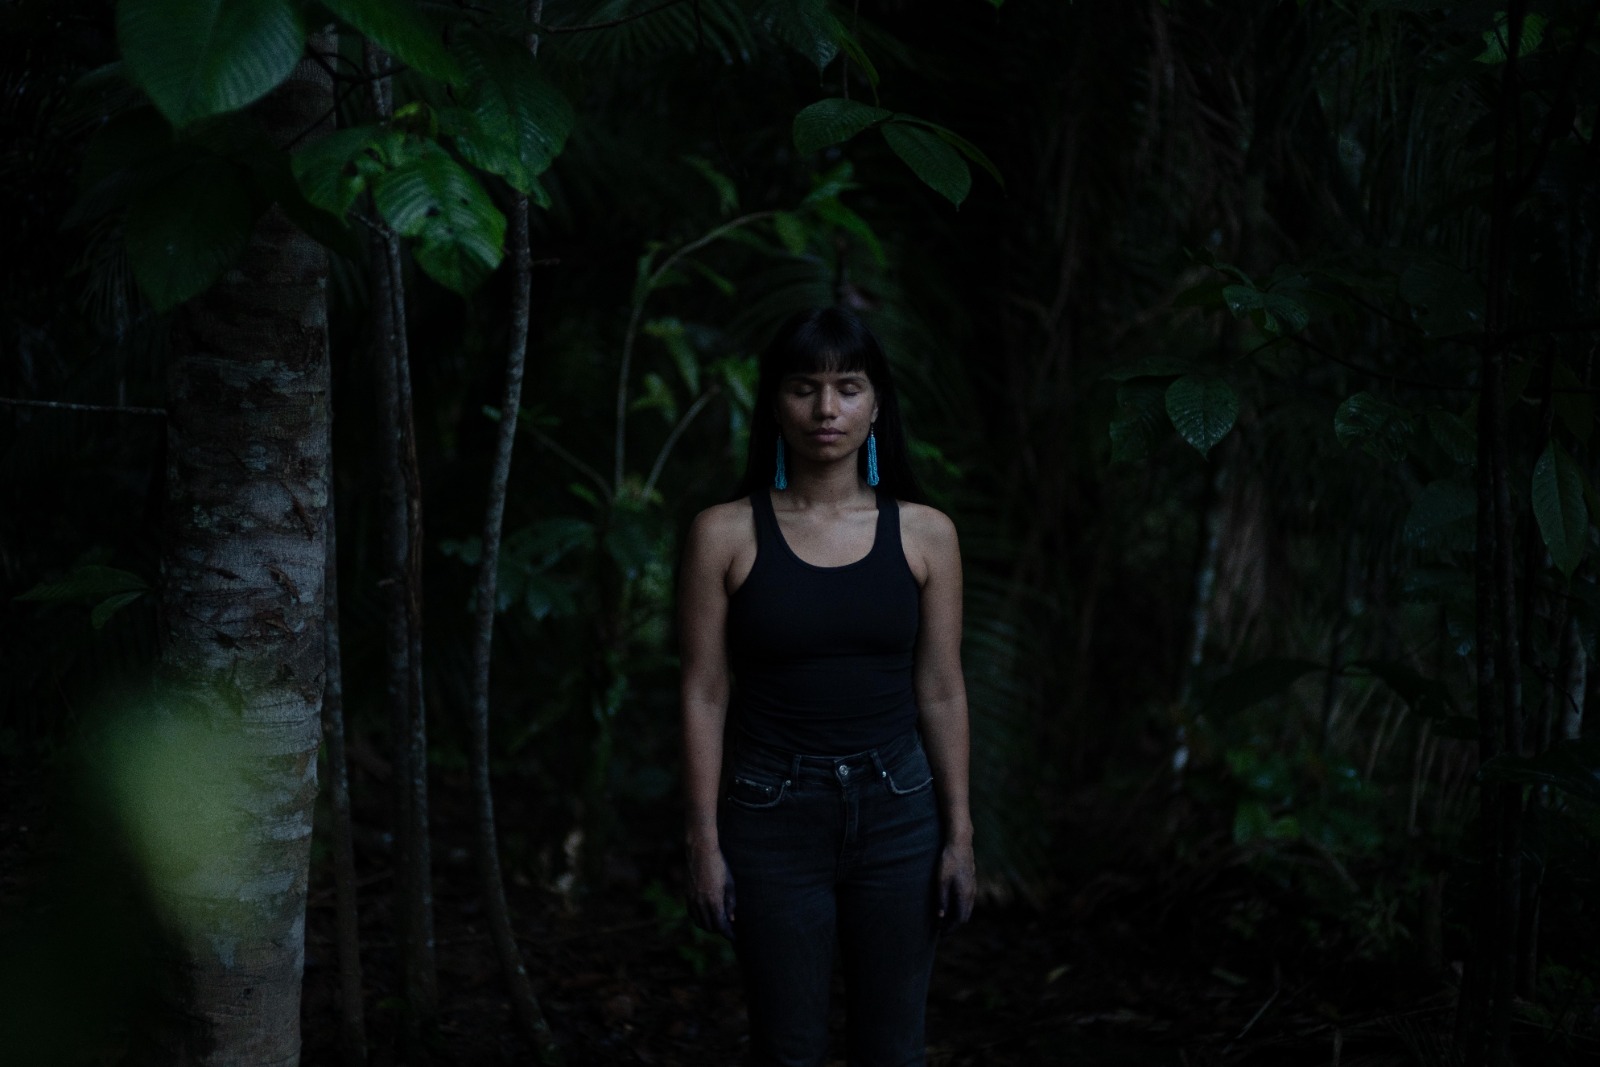 “Necesitamos buscar formas de tratar mejor tanto a la Tierra como a las mujeres, necesitamos sanar”: Entrevista a Nina Gualinga